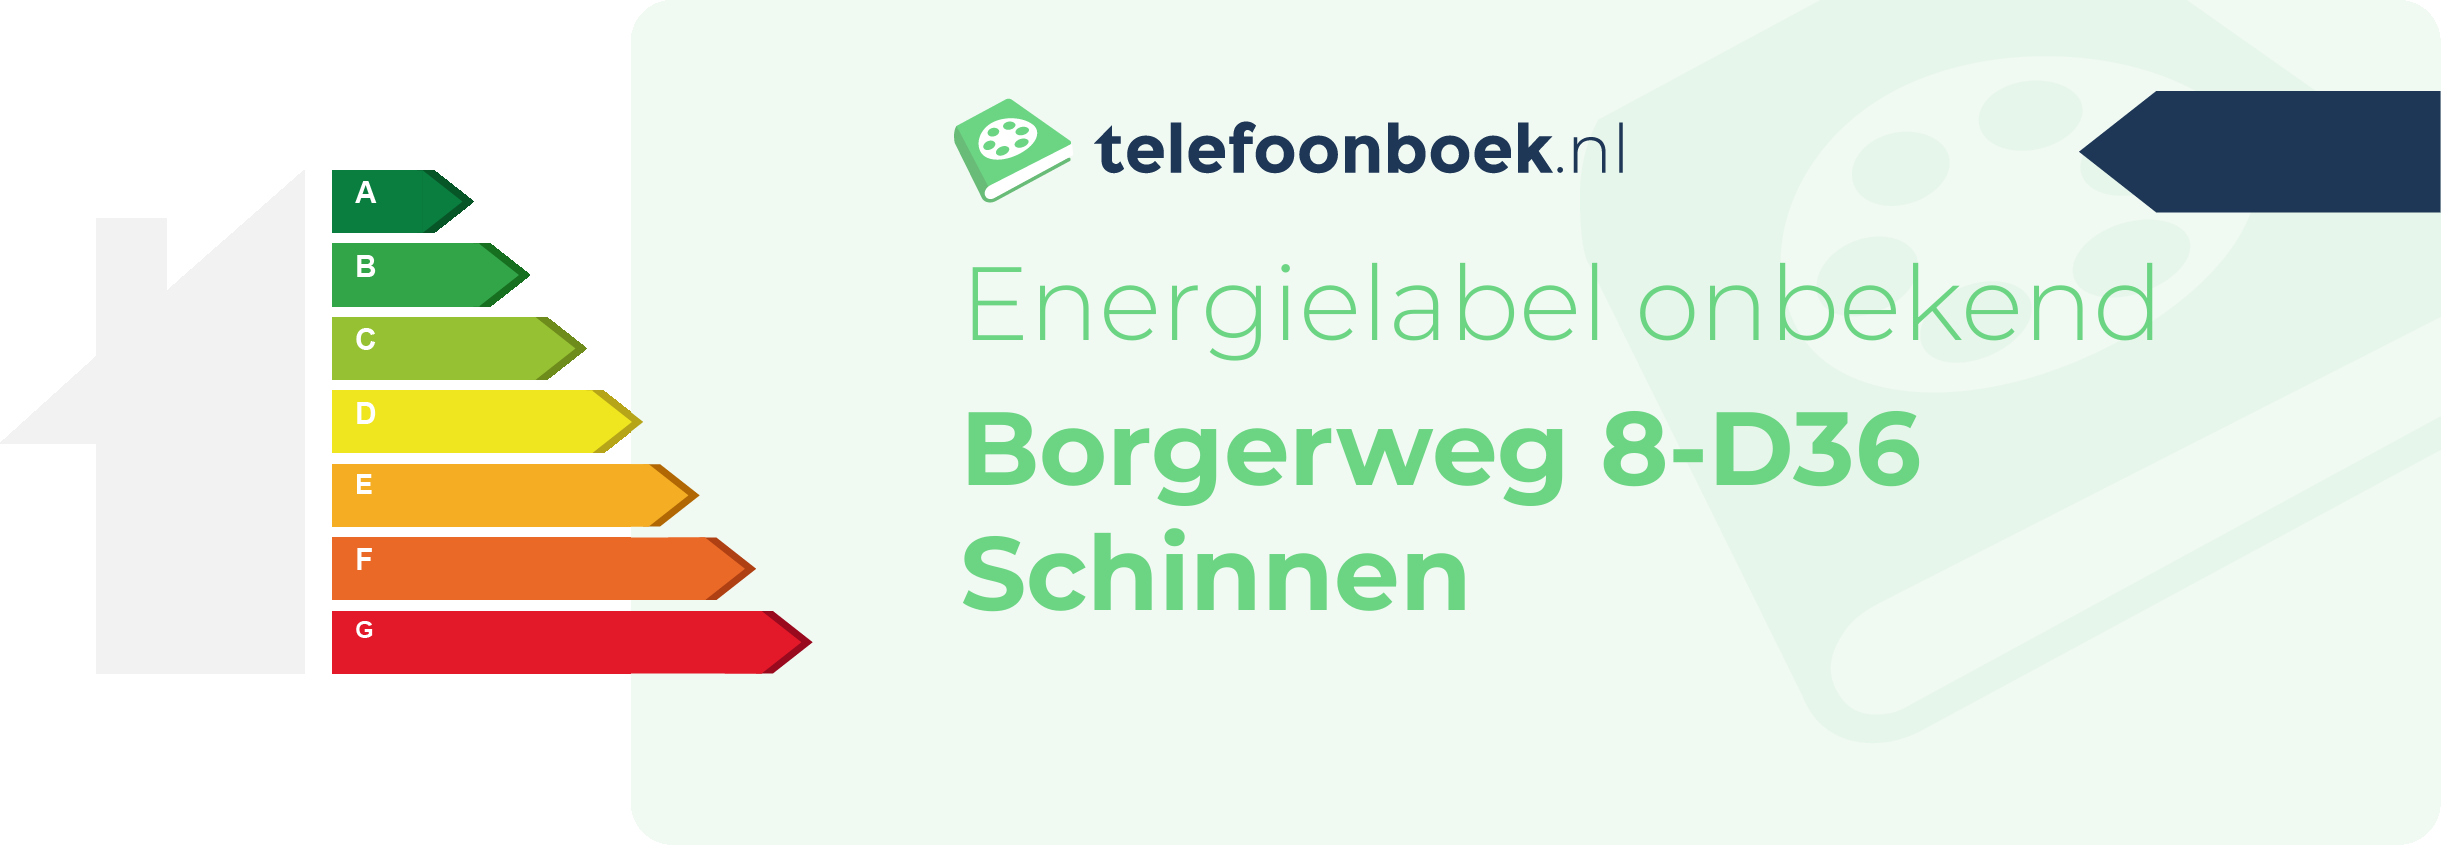 Energielabel Borgerweg 8-D36 Schinnen